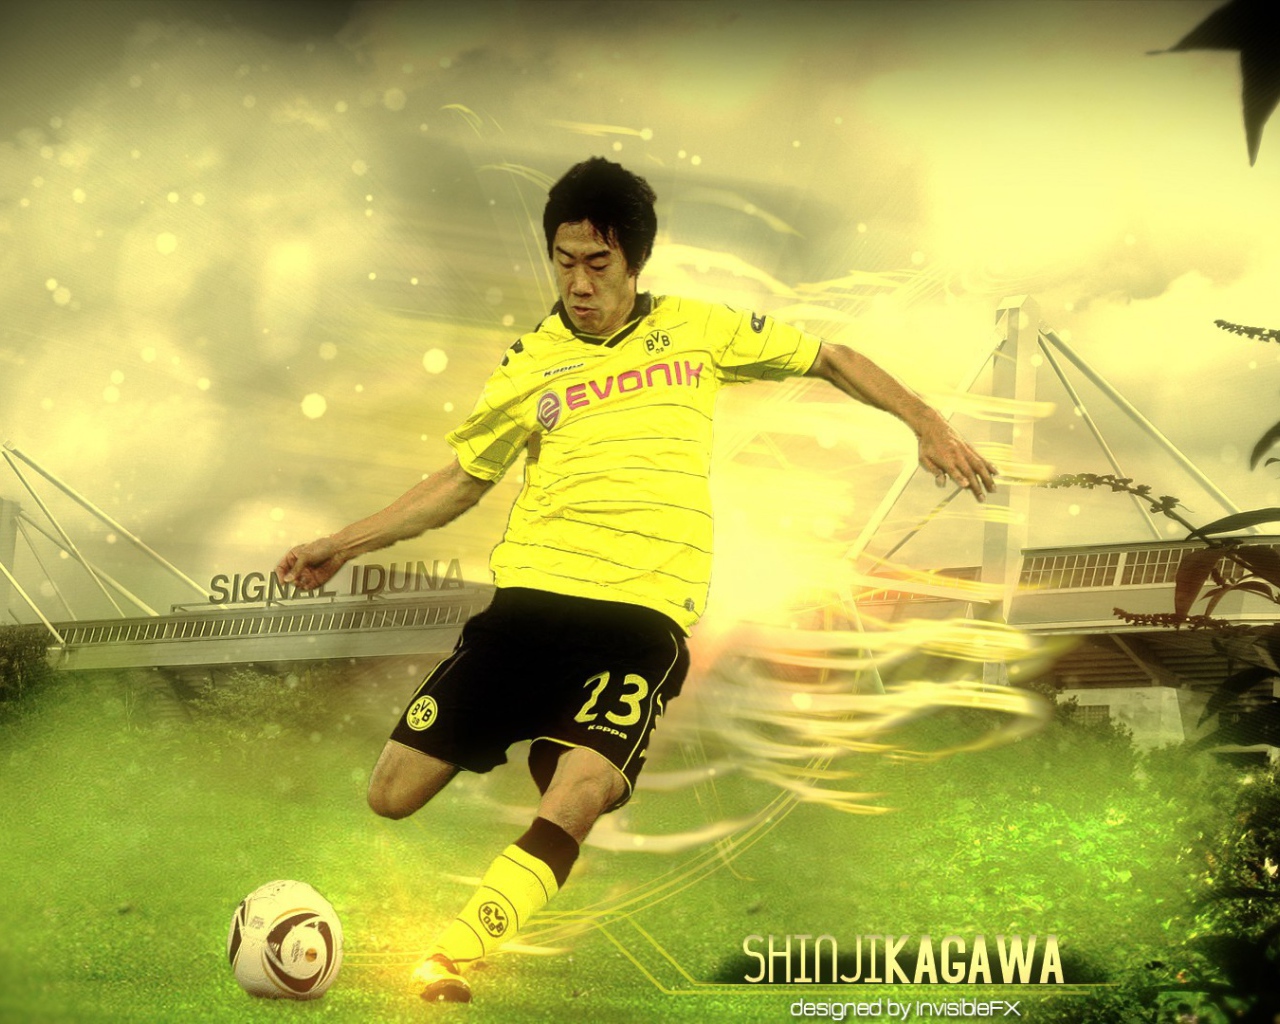 Japanese footballer